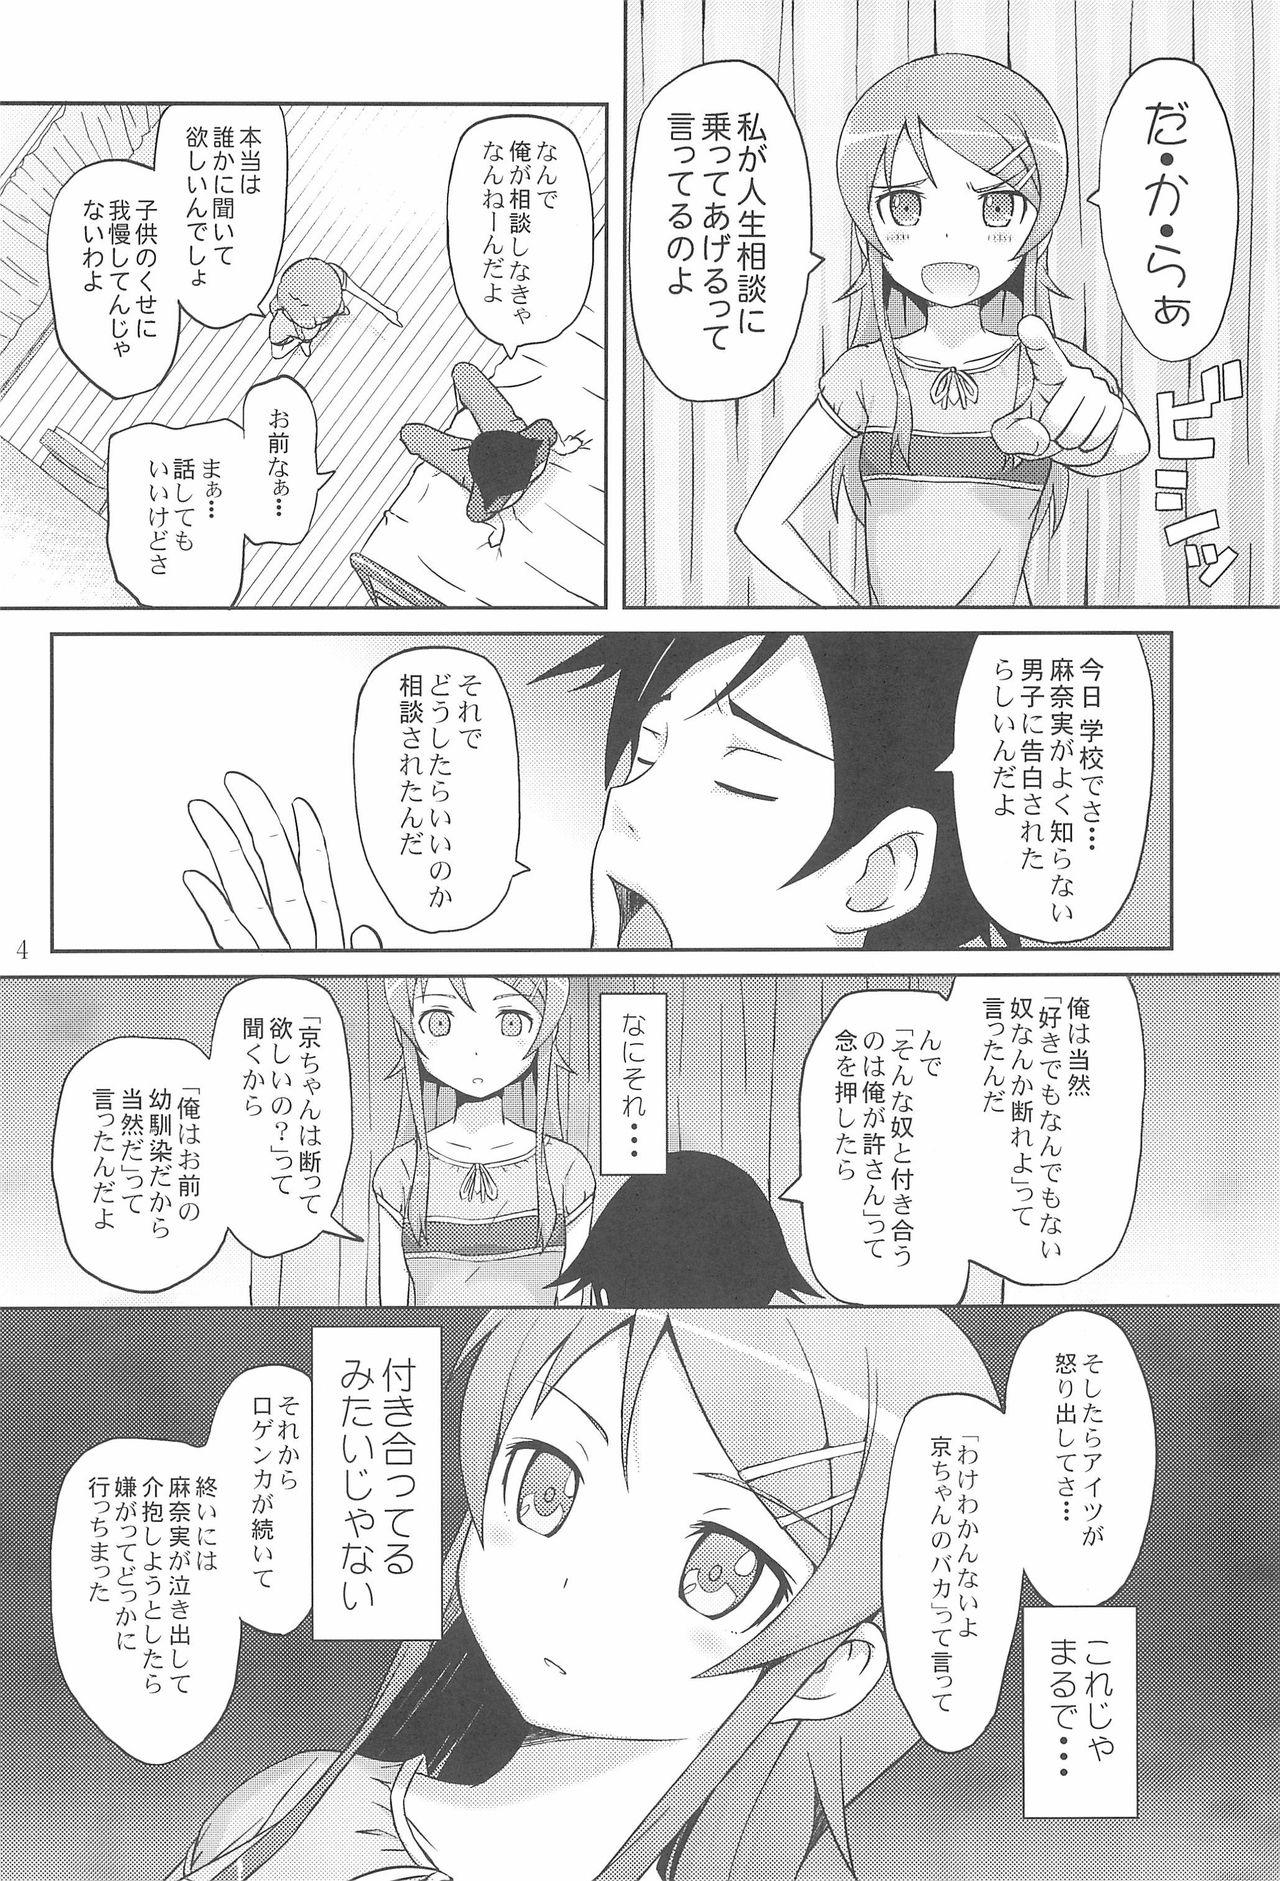 Nurse Maji de Ore no Imouto ga Koi o Shita Rashii zo - Ore no imouto ga konna ni kawaii wake ga nai Ex Girlfriends - Page 6